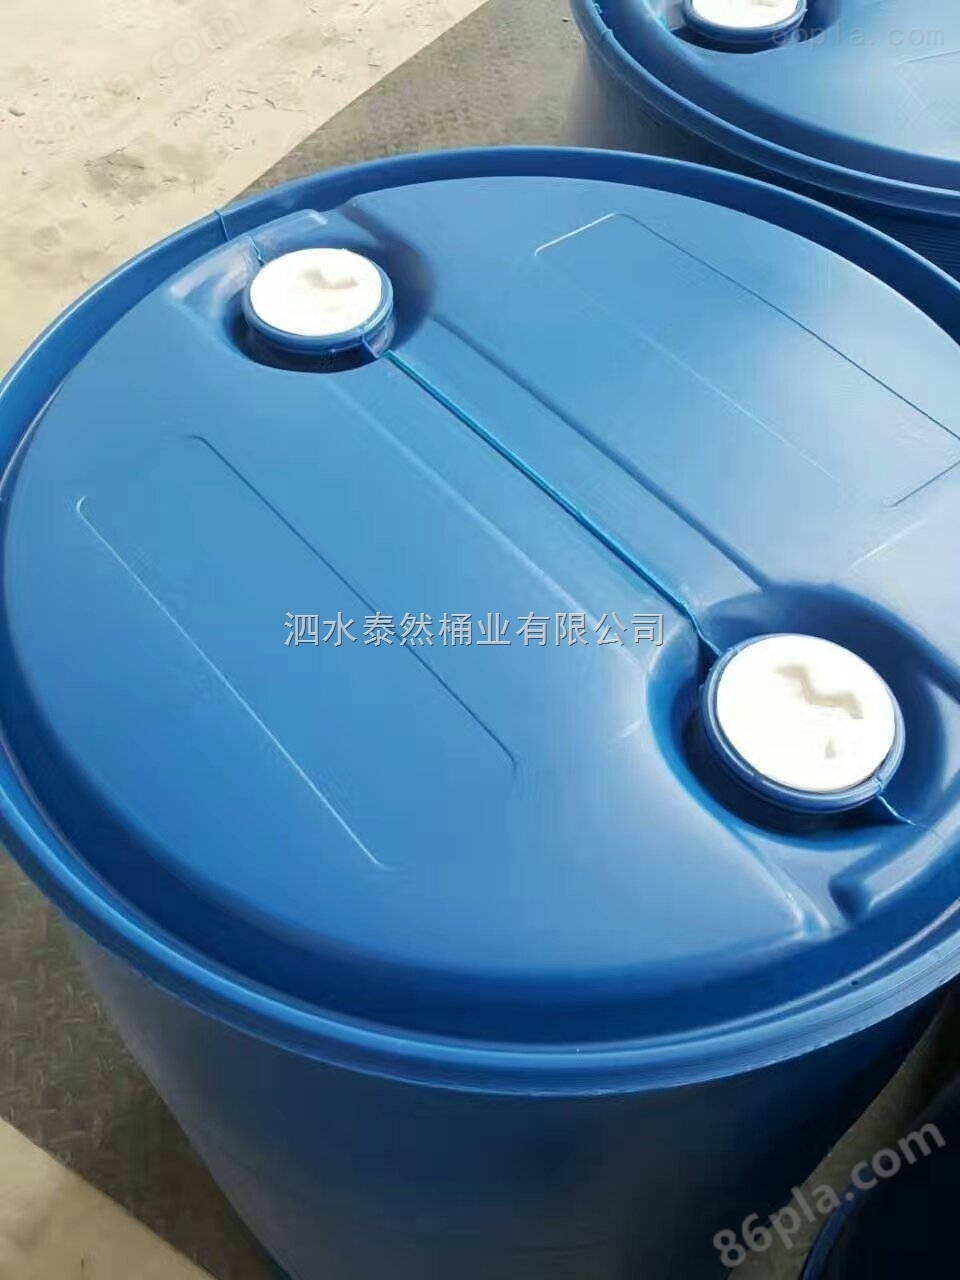 马鞍山200L塑料桶化工桶包装桶化工容易搬运